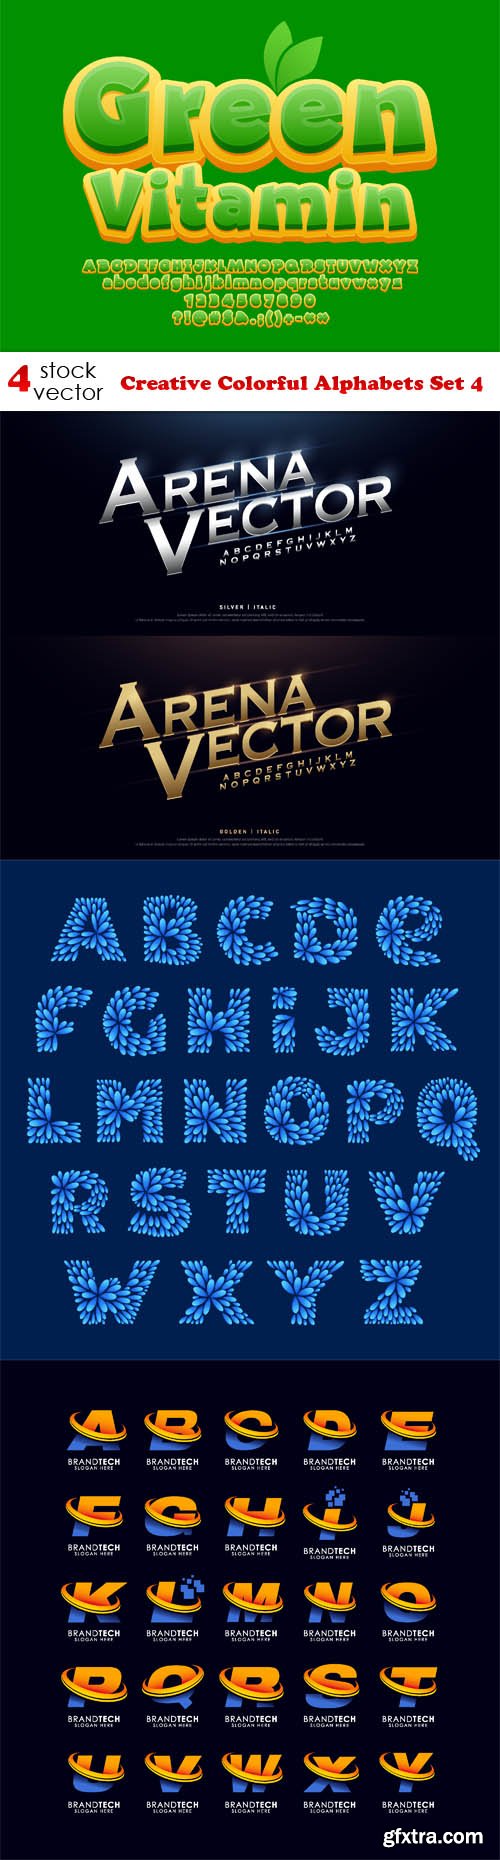 Vectors - Creative Colorful Alphabets Set 4